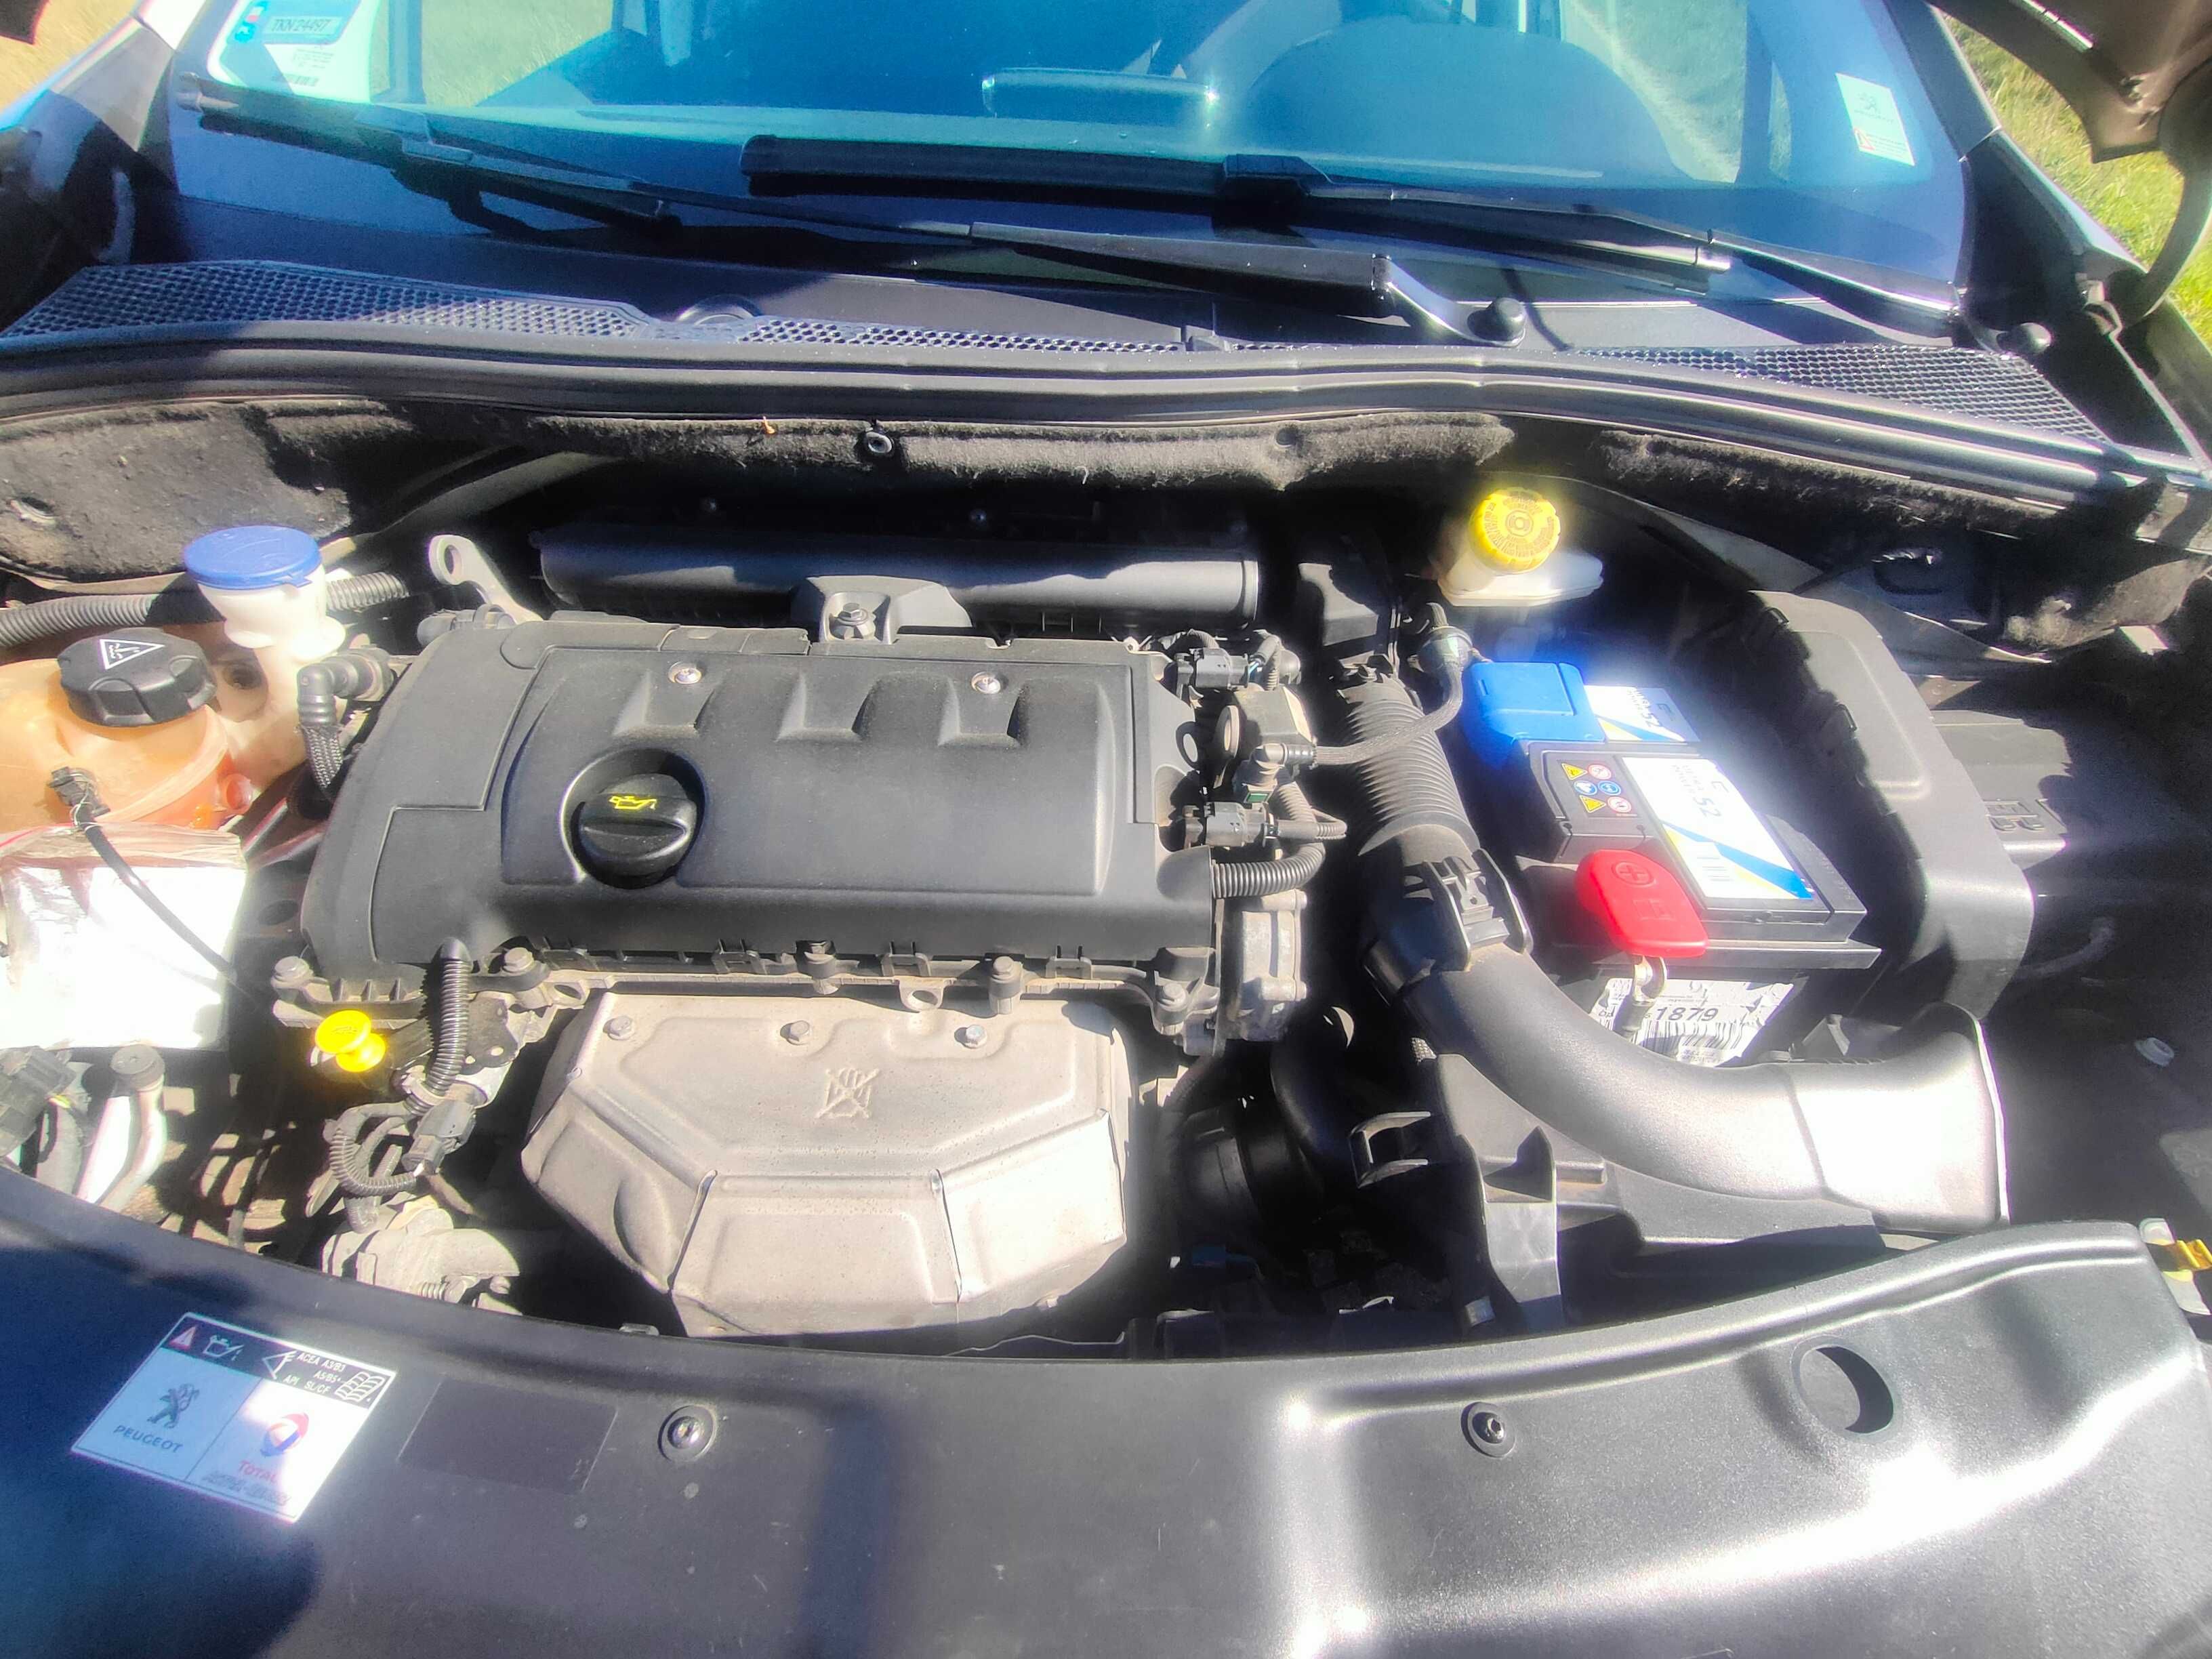 Peugeot 208 1.4 benzyna, 7 lat w jednych rękach. Polecam